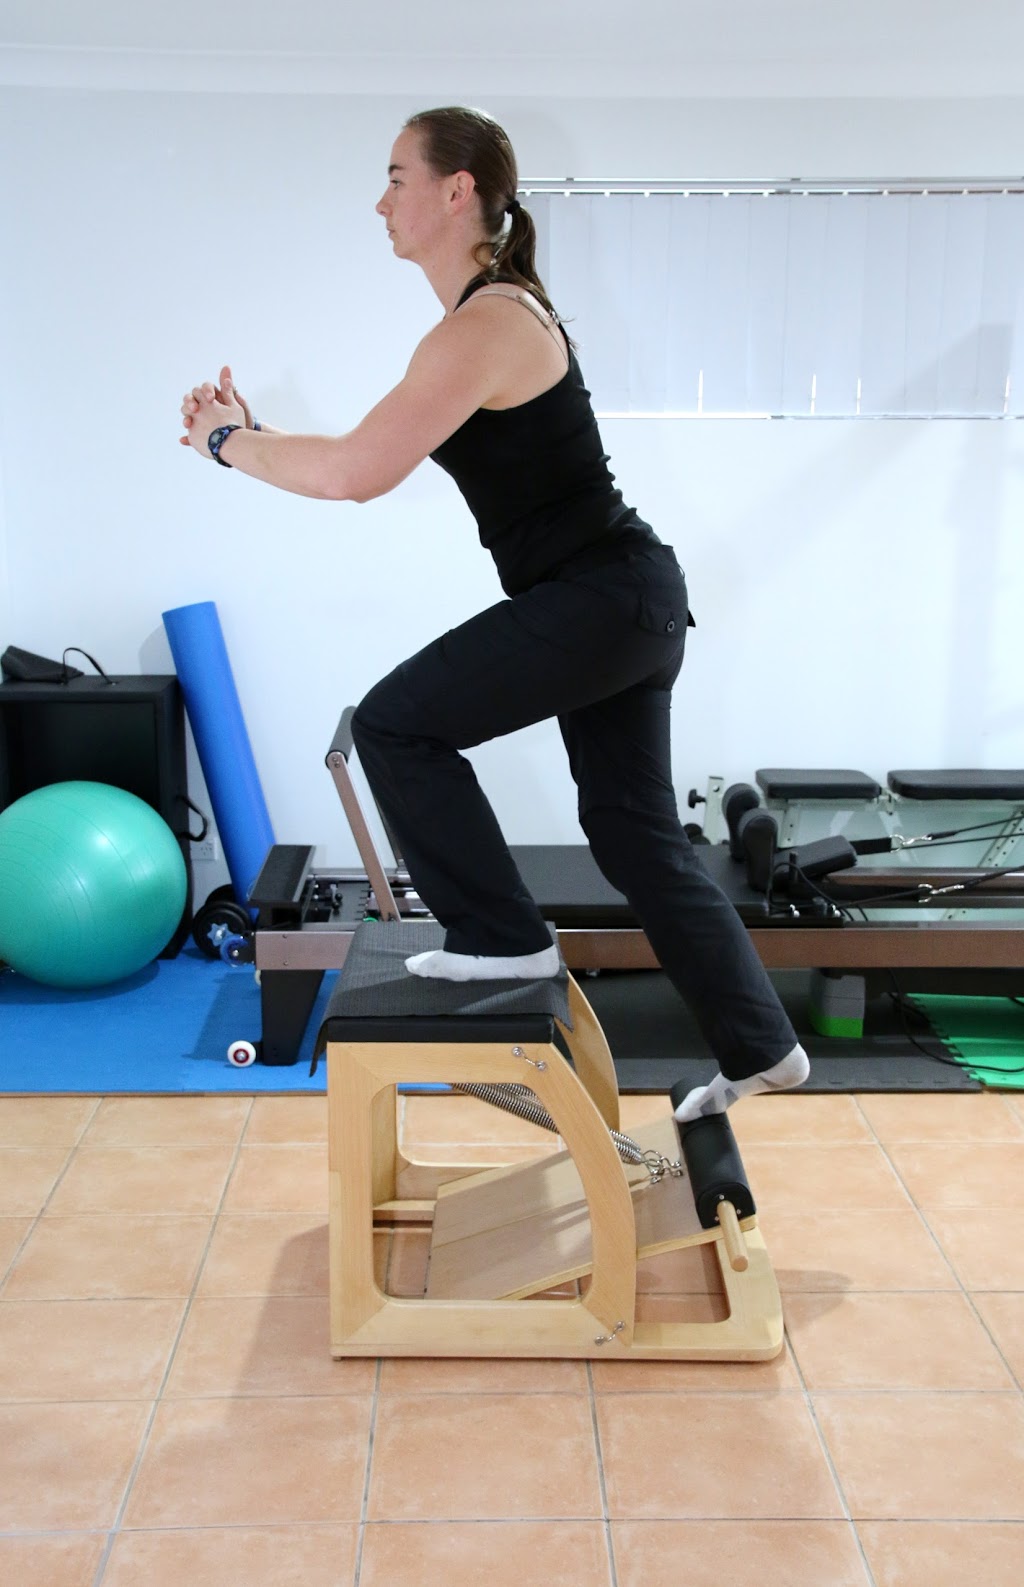 Melanie Hibbert Exercise Physiology | gym | 29 Brooke St, Engadine NSW 2233, Australia | 0405341091 OR +61 405 341 091